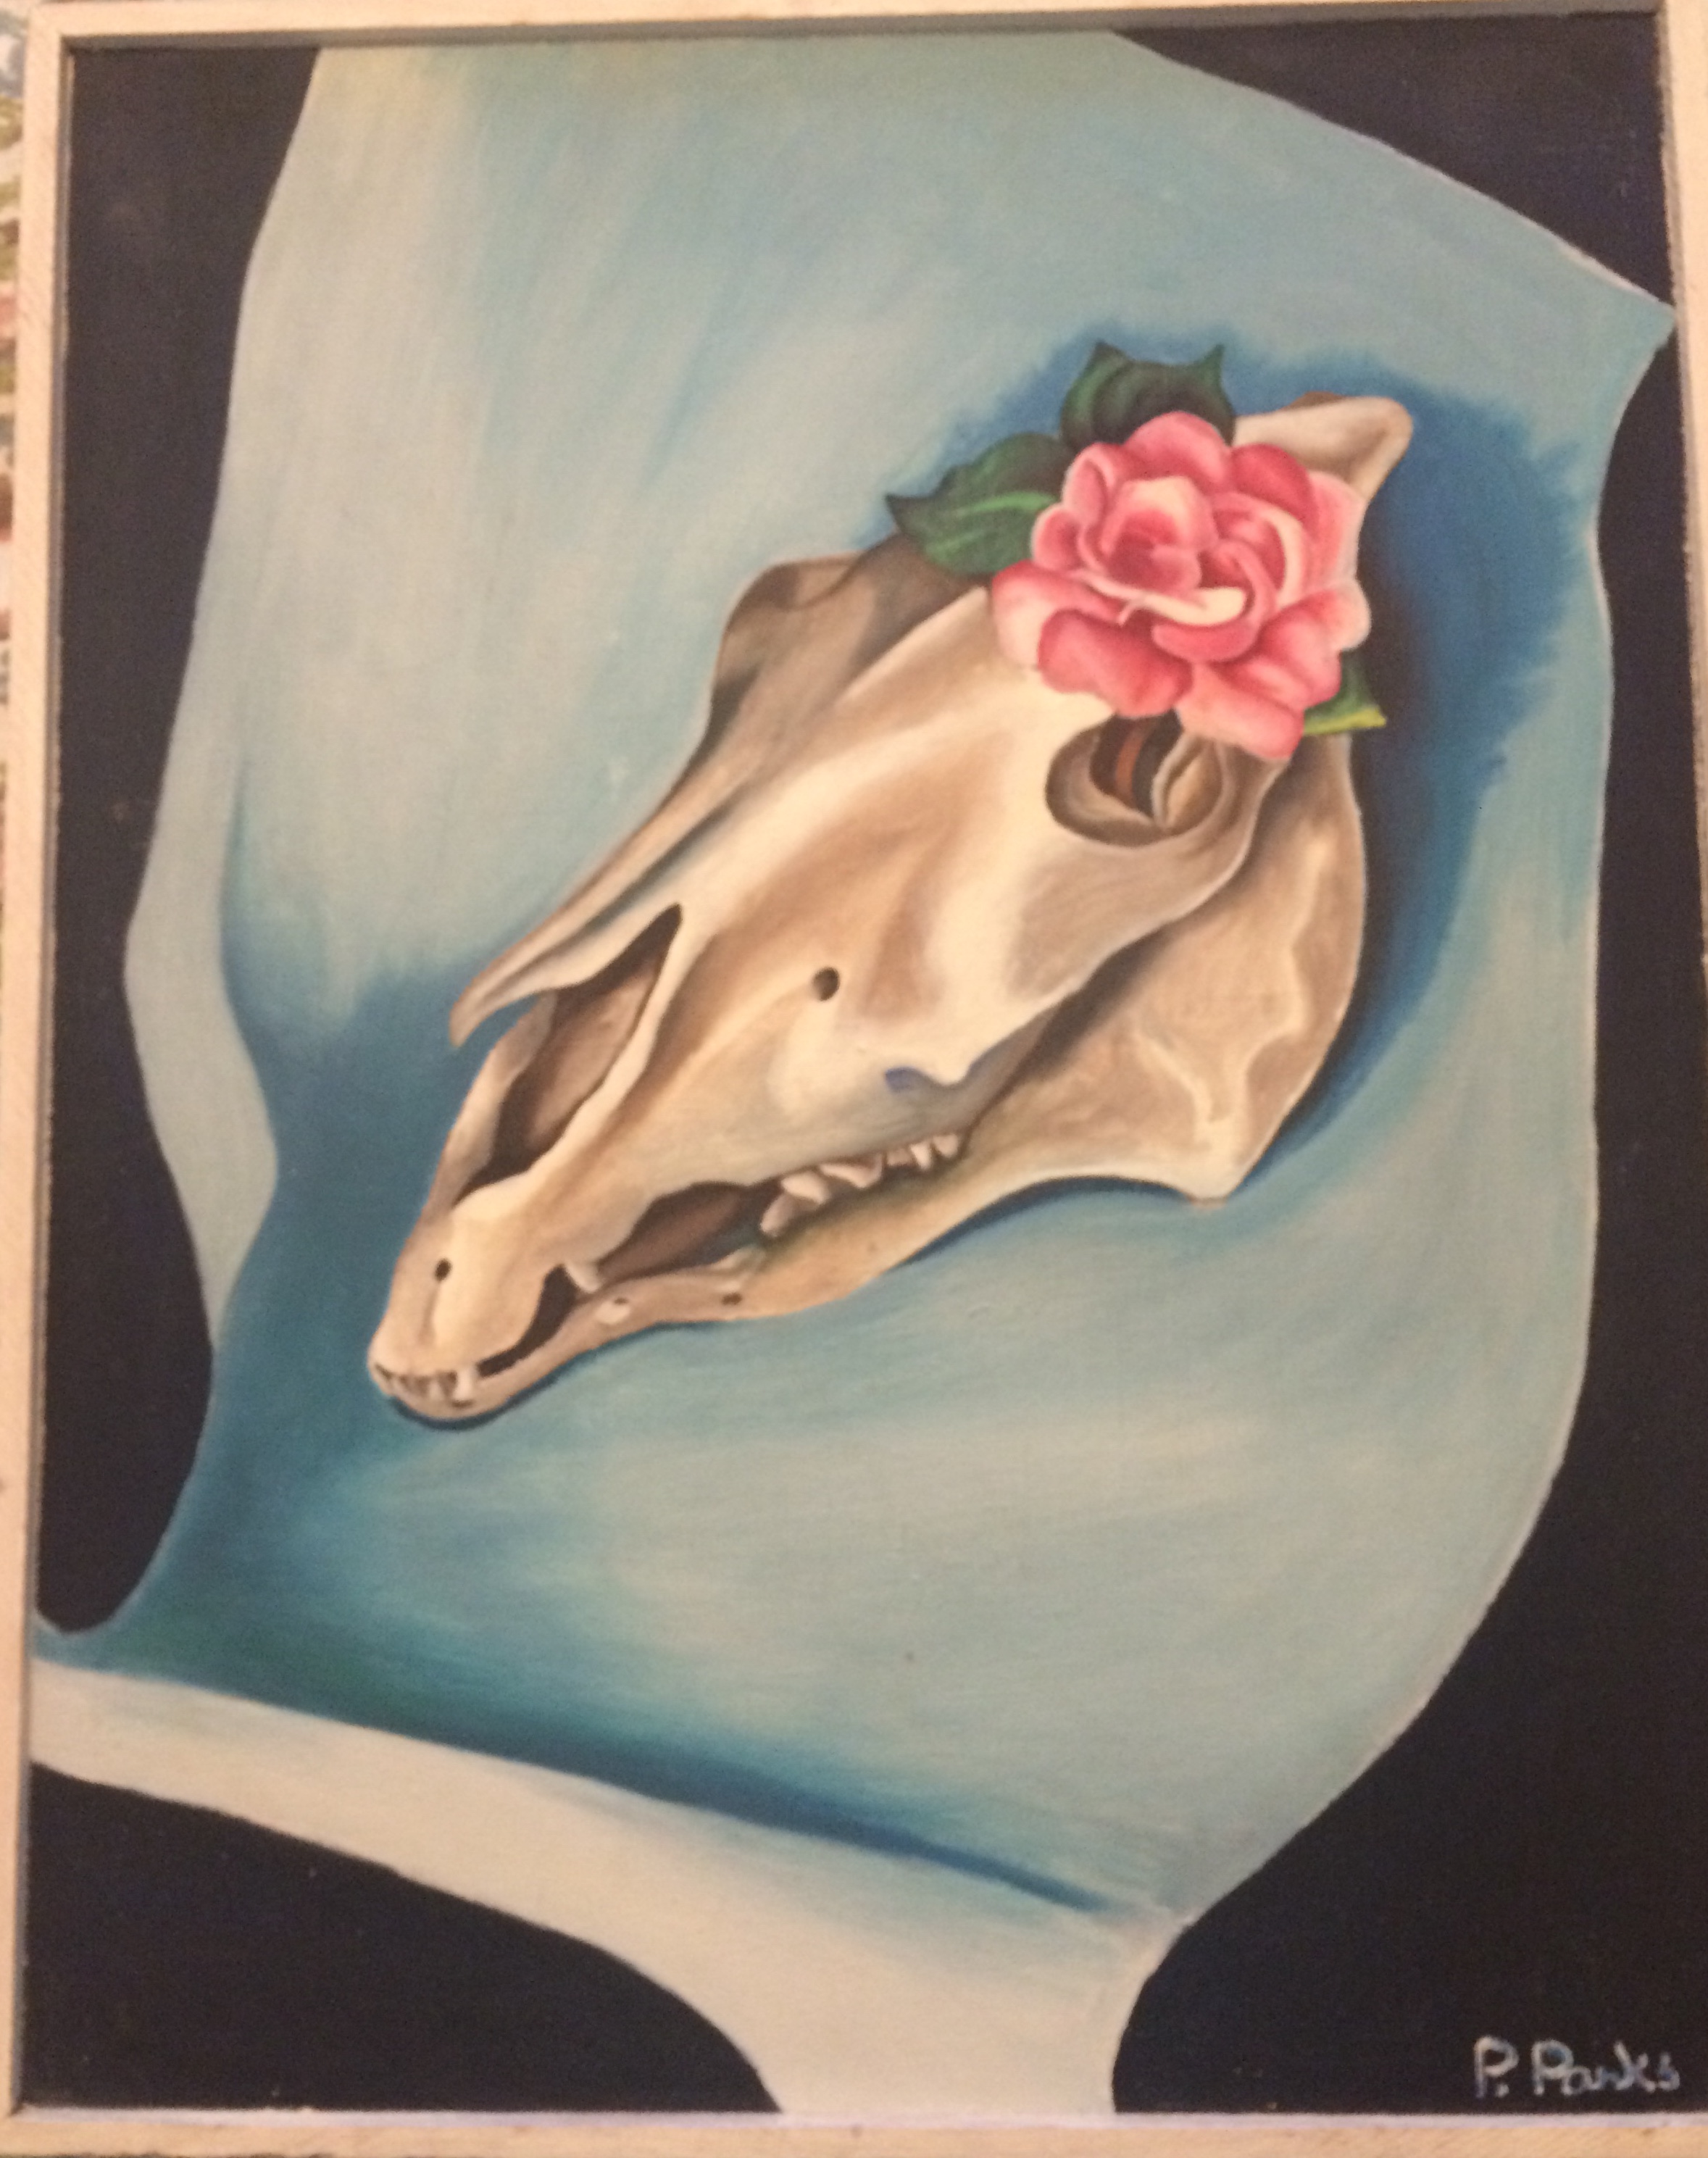 Georgia O’Keeffe: How a pink rose got in the horse’s eye